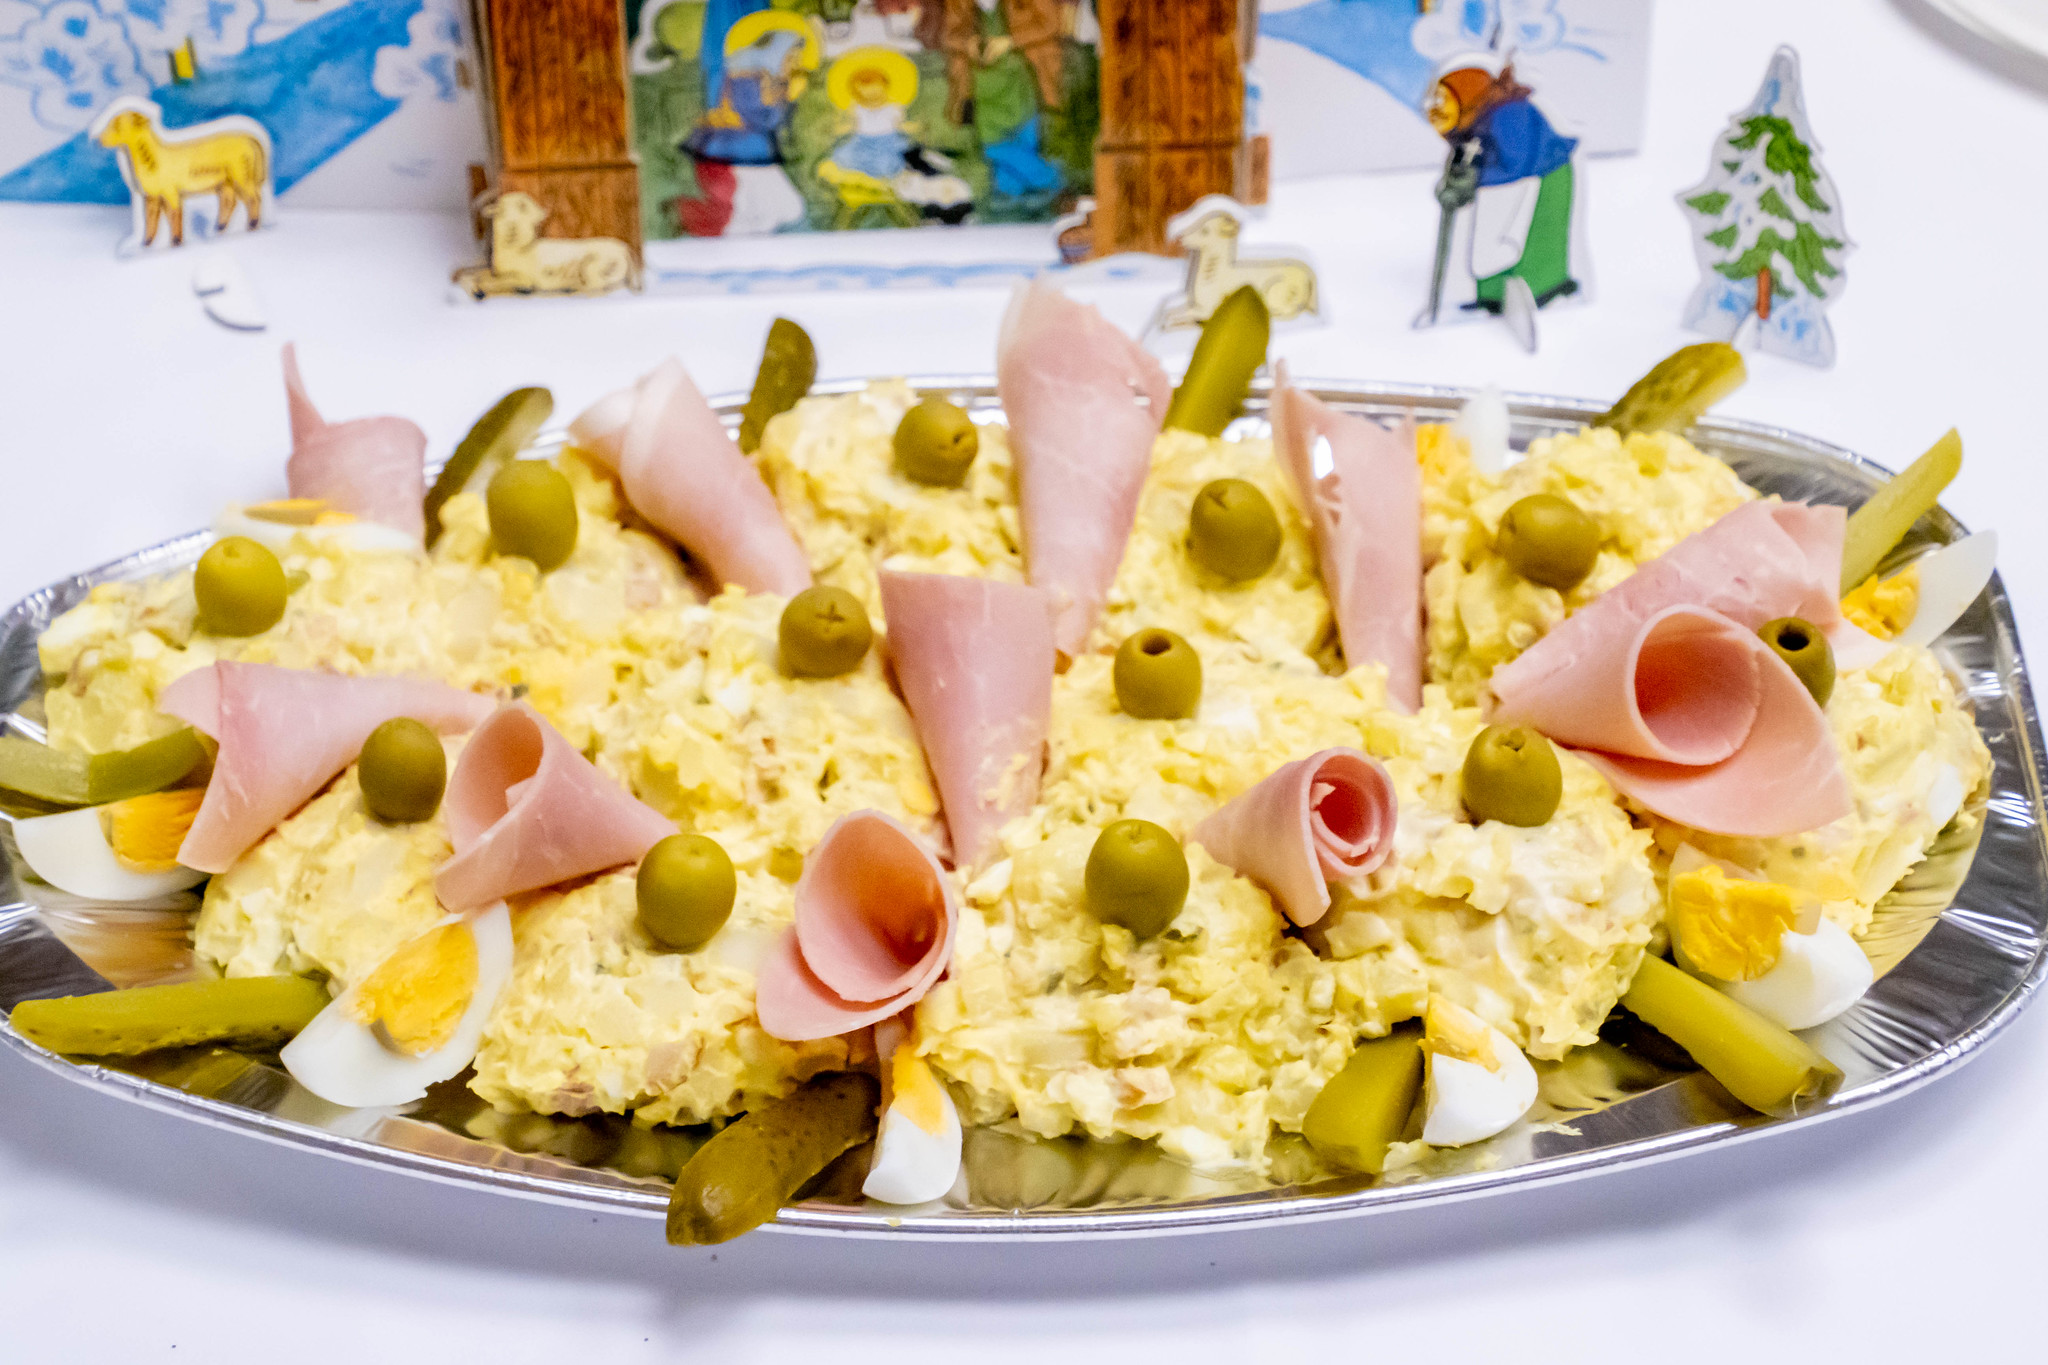 チェコのクリスマスは鯉のフライとポテトサラダ #チェコ親善アンバサダー #クリスマス会